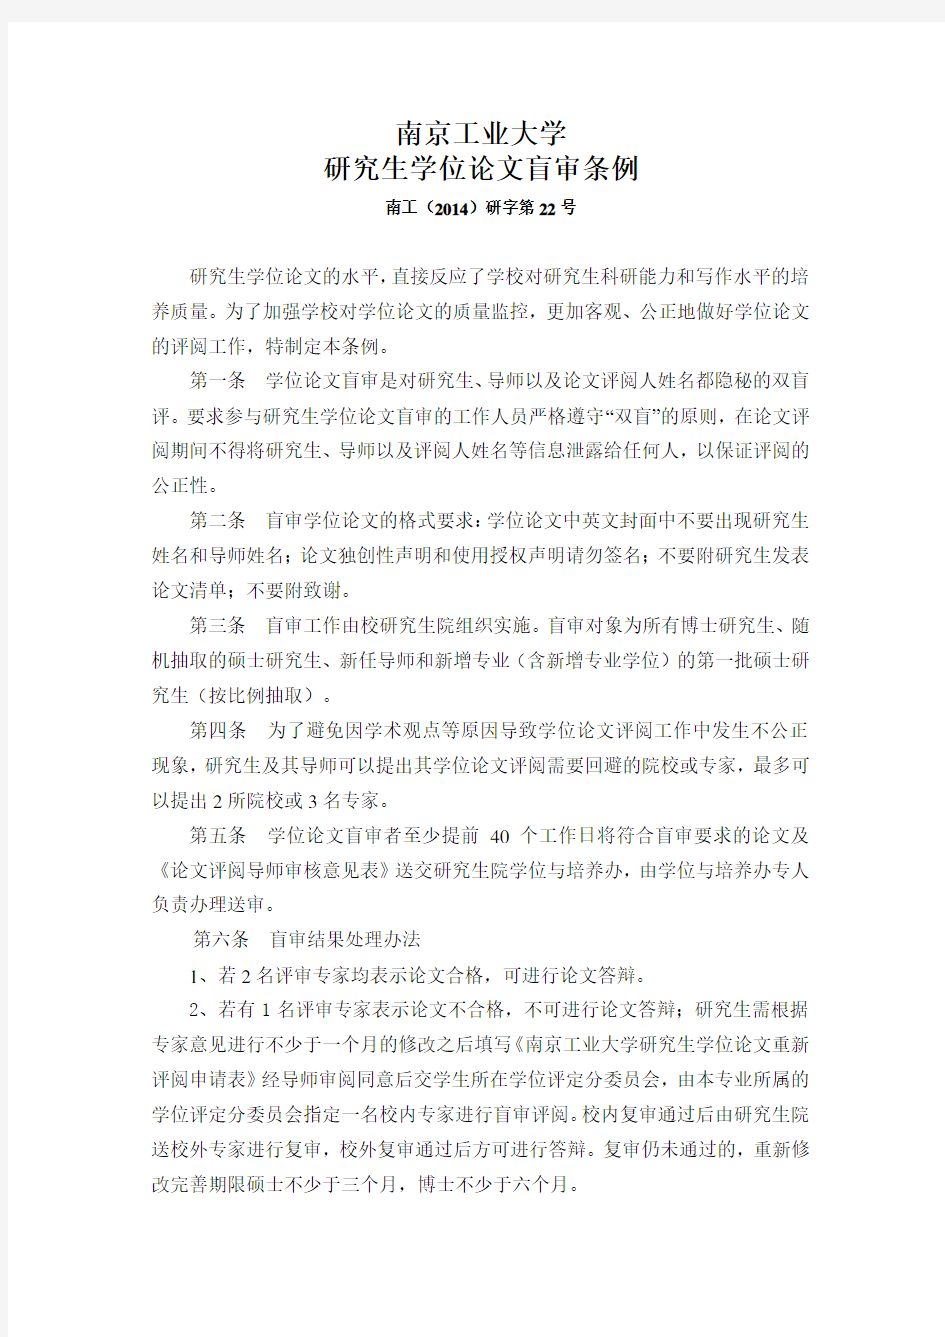 南京工业大学研究生学位论文盲审条例